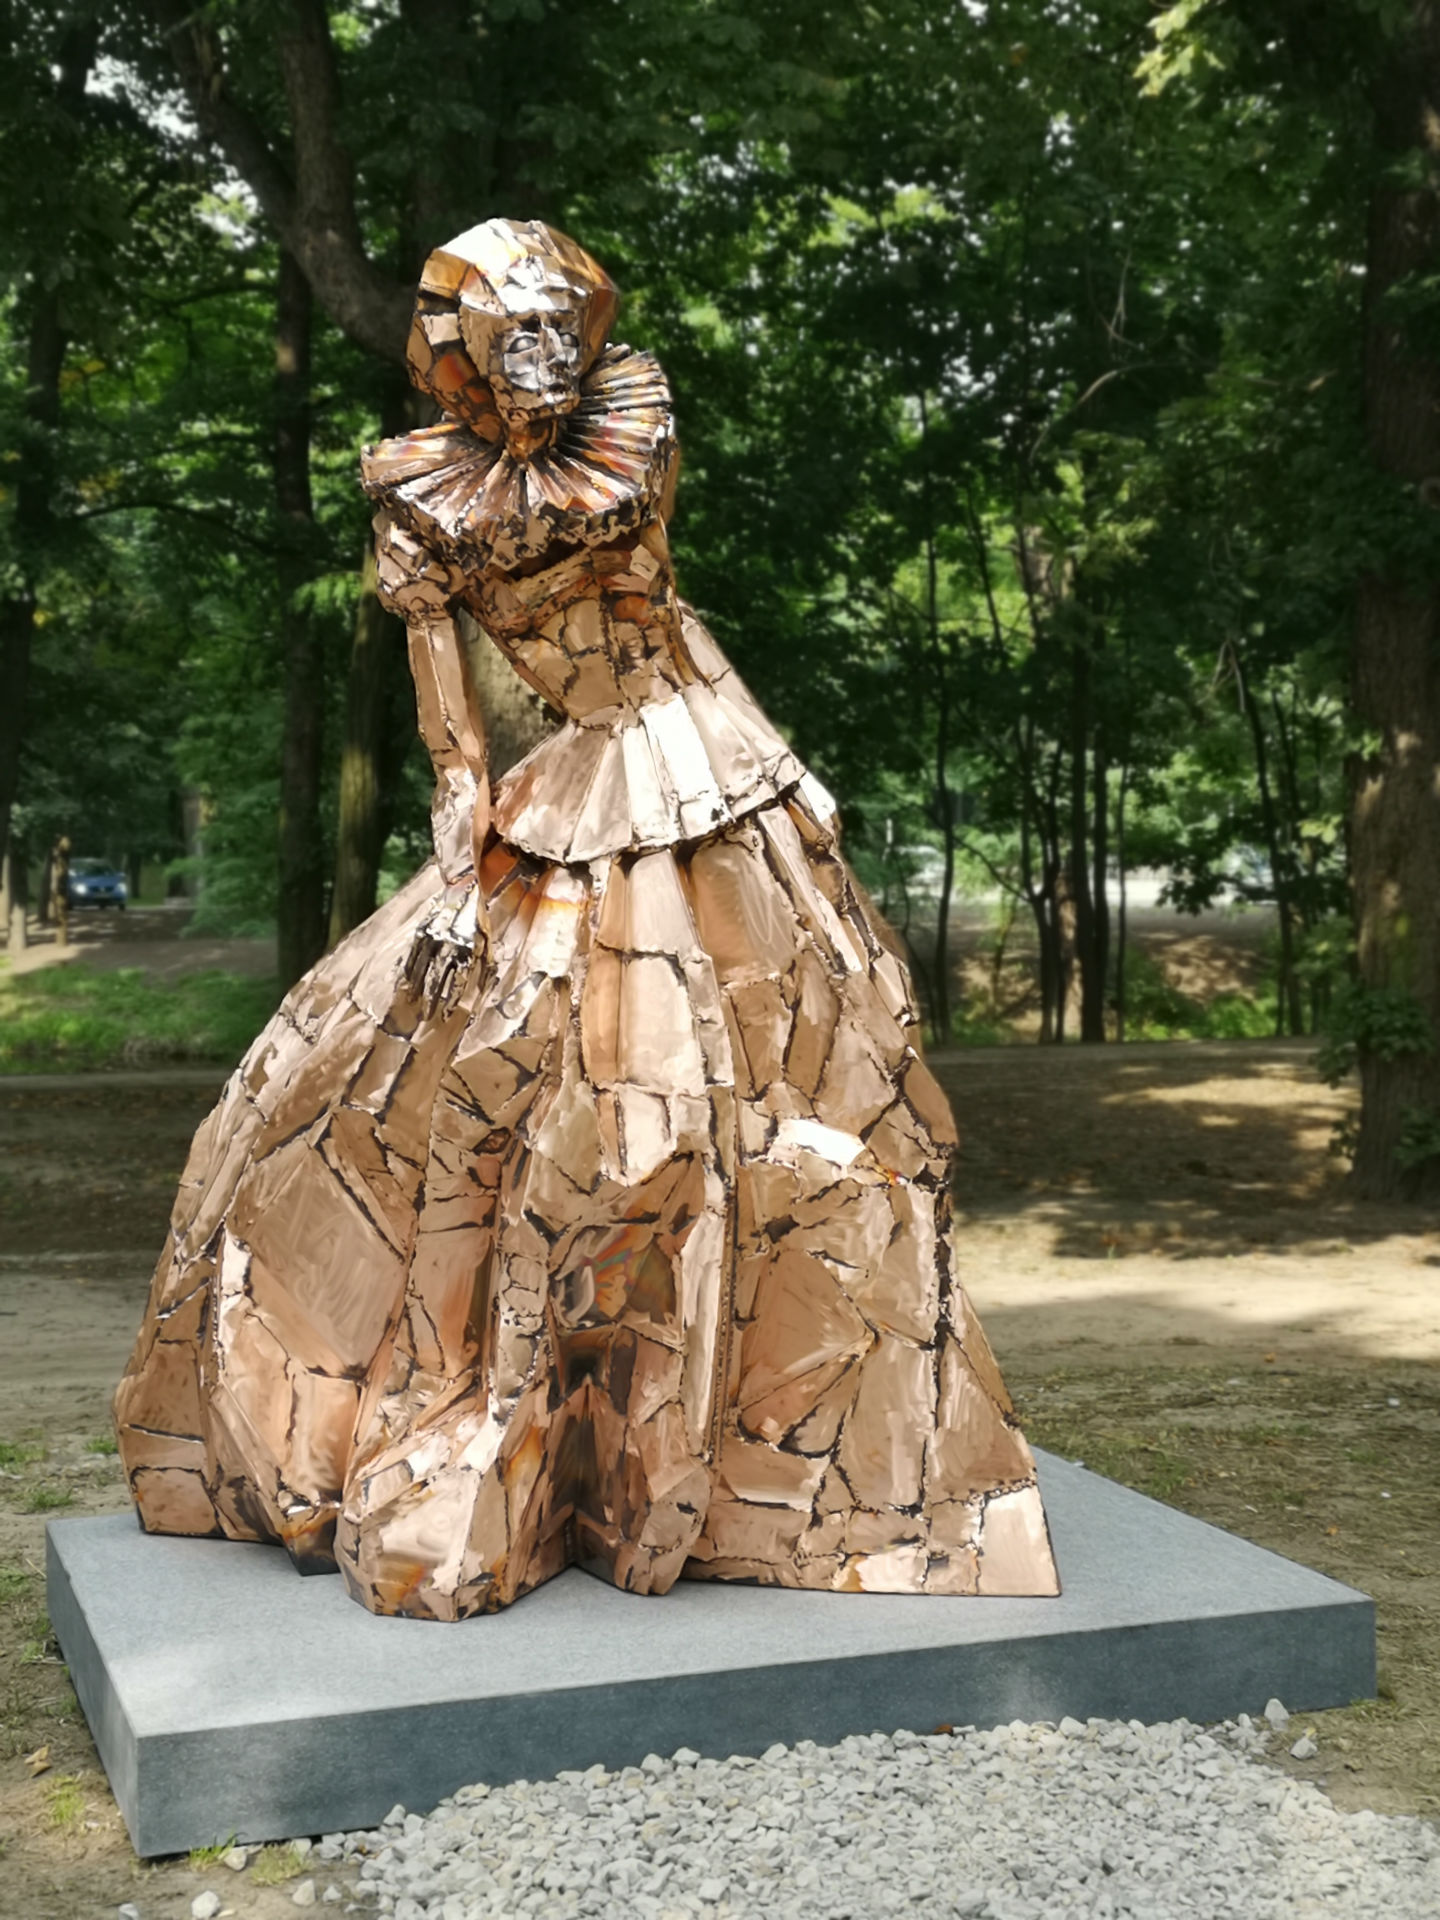 Pomnik w całej okazałości. Rzeźba przedstawia Annę Mińską ubraną w długą suknię oraz z kryzą pod szyją. Kobieta wychyla biodro lewą stronę, ręce zwisają jej wzdłuż ciała. Nie jest to realistycznie oddany portret; formy są uproszczone. Całość, utrzymana w kolorach rdzawo-brązowych, skomponowana jest z fragmentów metalu o nieregularnych kształtach.